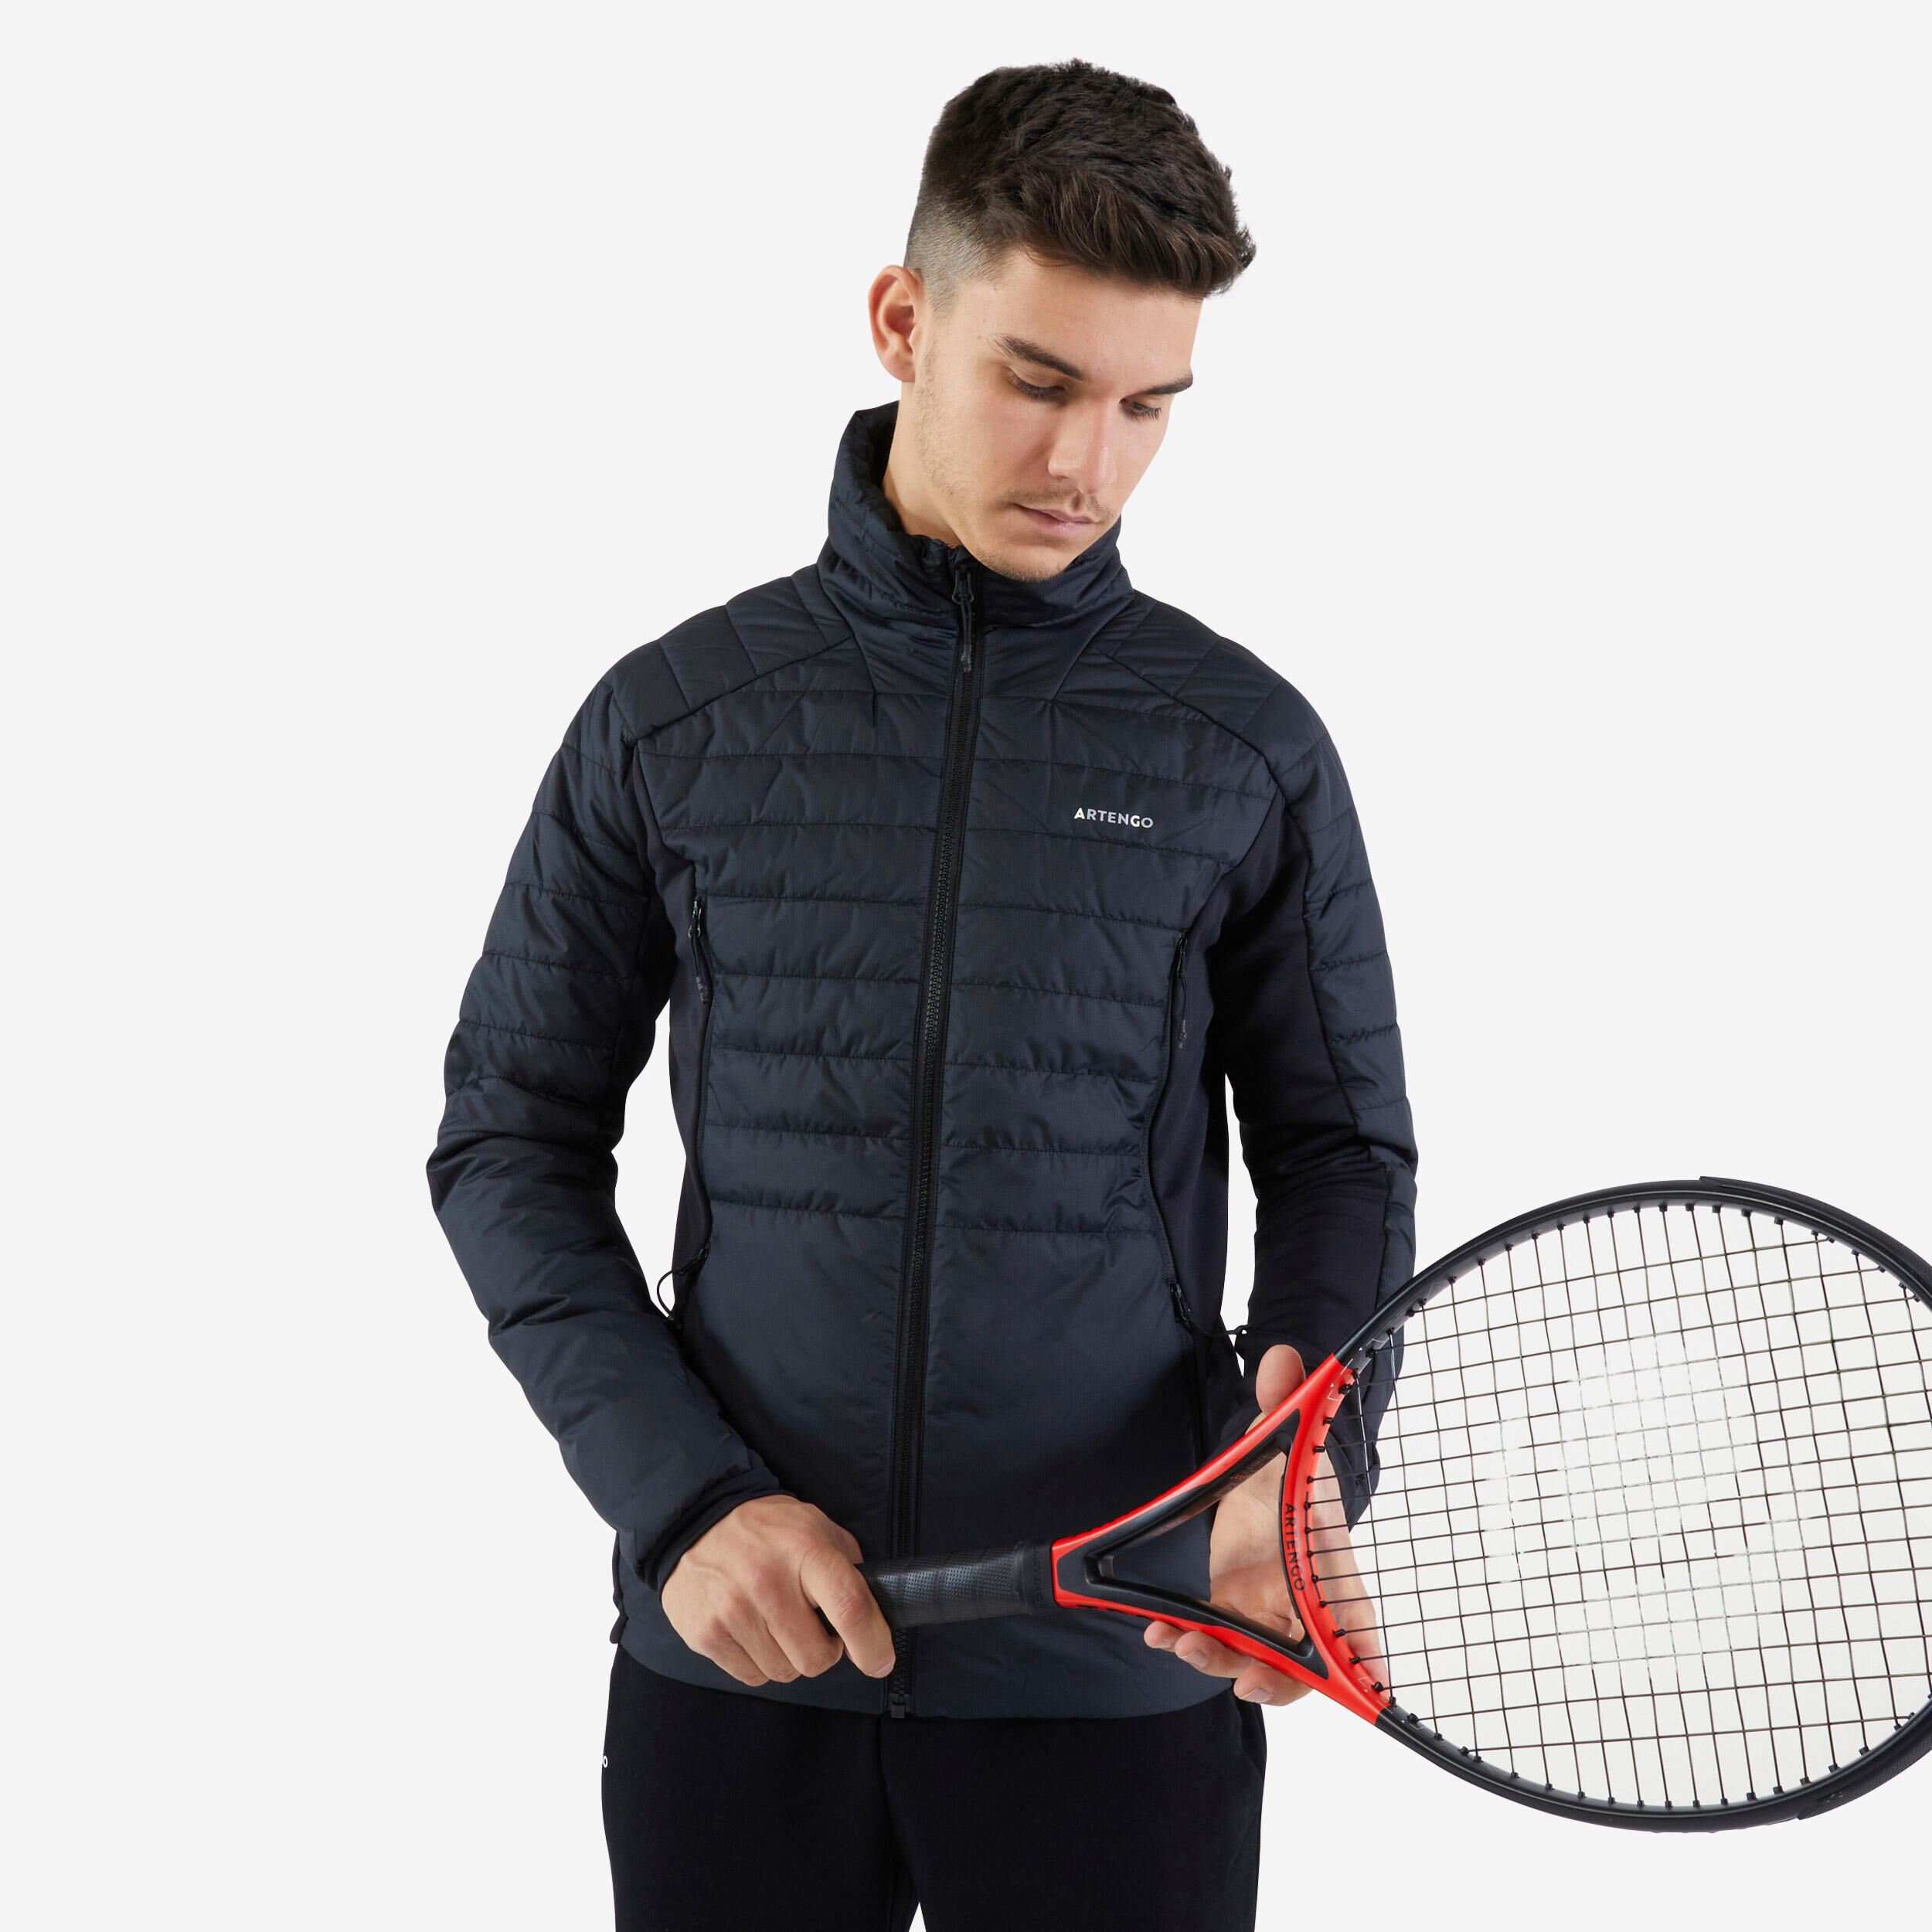 ARTENGO Men's Thermal Tennis Jacket - Black